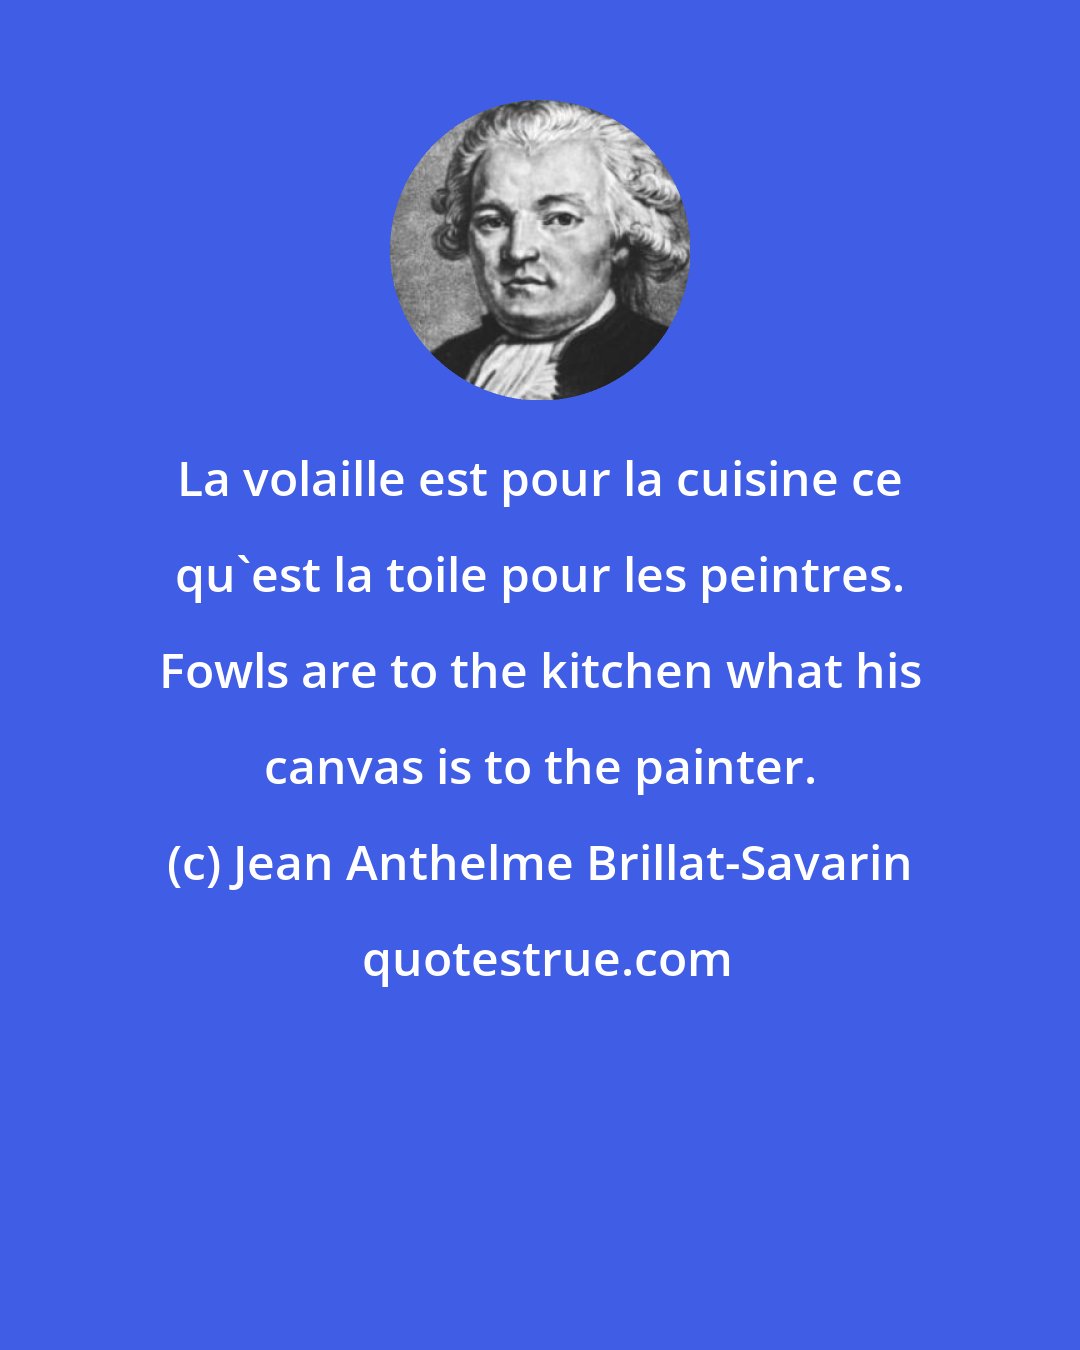 Jean Anthelme Brillat-Savarin: La volaille est pour la cuisine ce qu'est la toile pour les peintres. Fowls are to the kitchen what his canvas is to the painter.